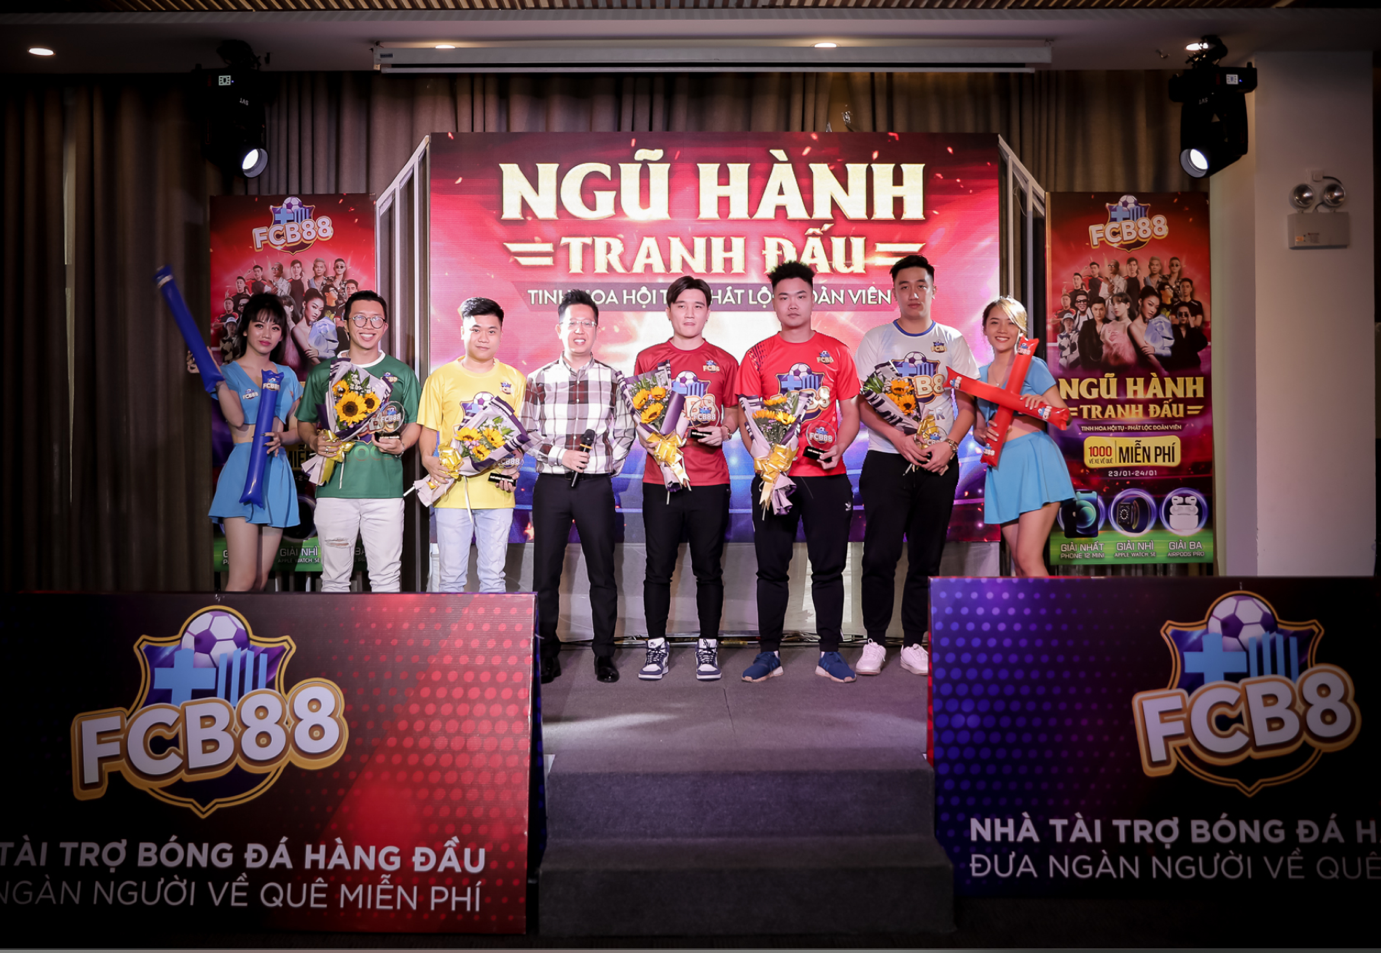 MC Việt Khuê chụp hình cùng 5 gamer nổi tiếng: Tapi Tuấn Anh, Batigol, Đức Anh, Quân Bi, Quang Barca